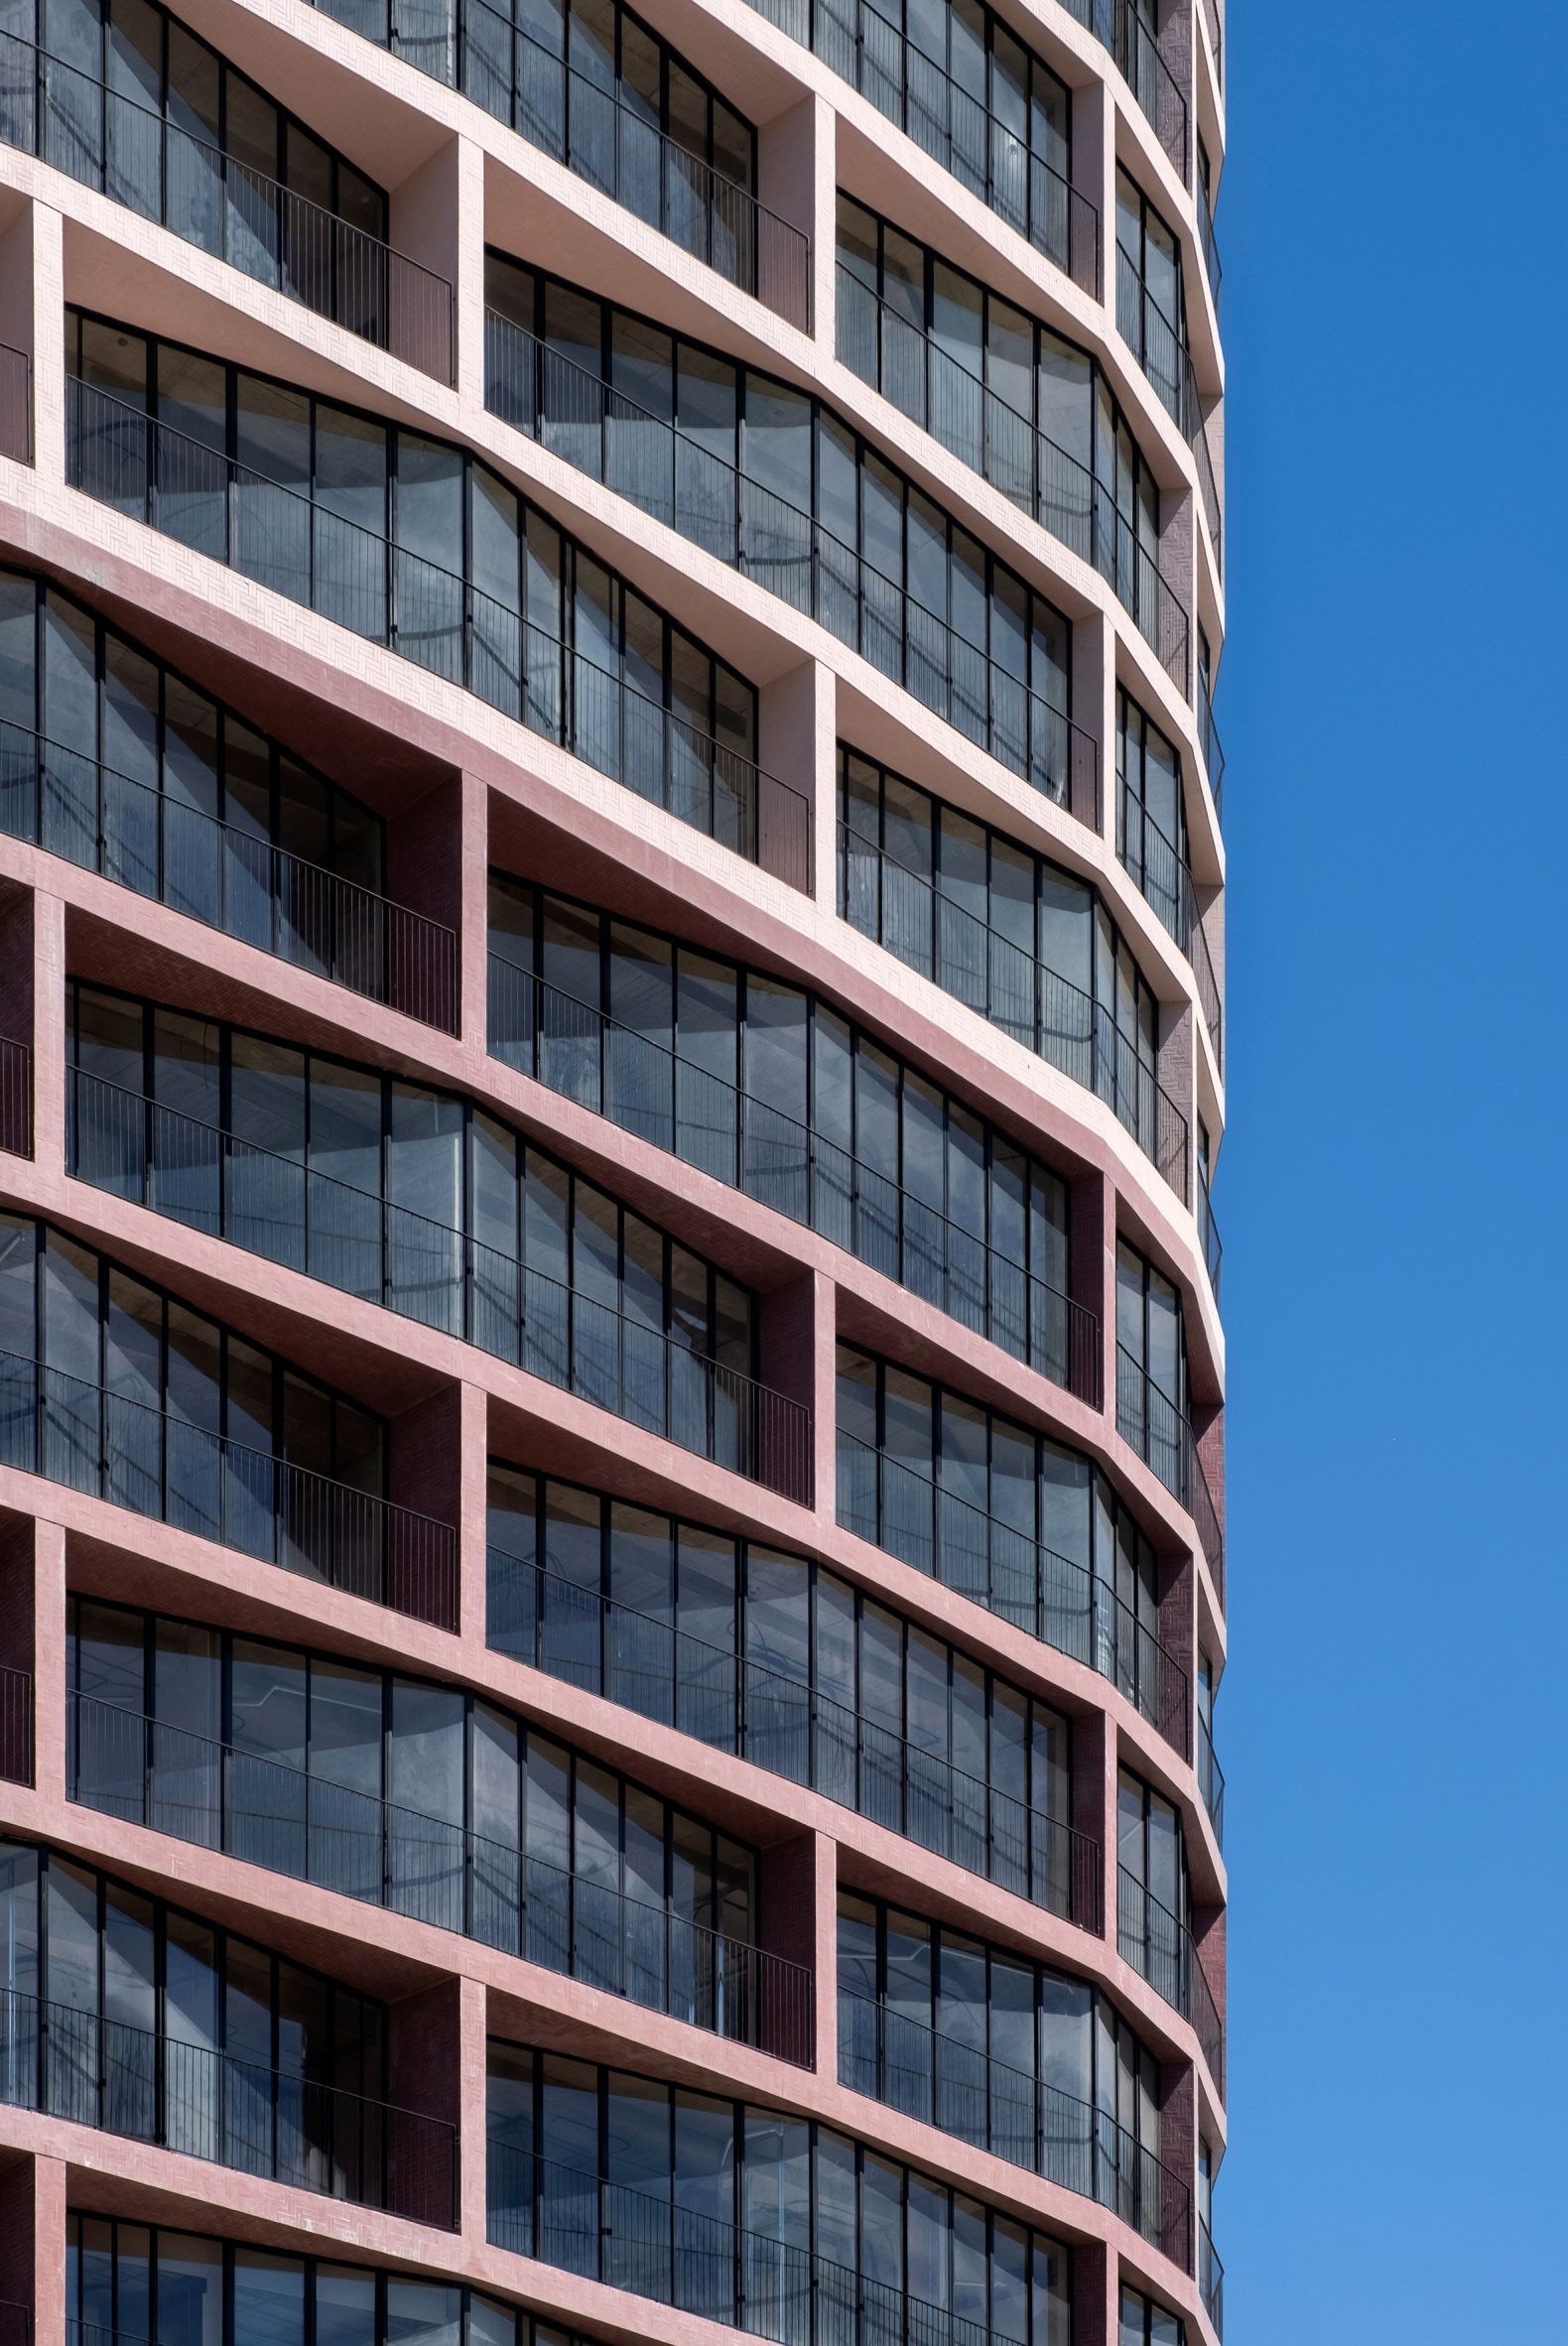 Pink skyscraper facade